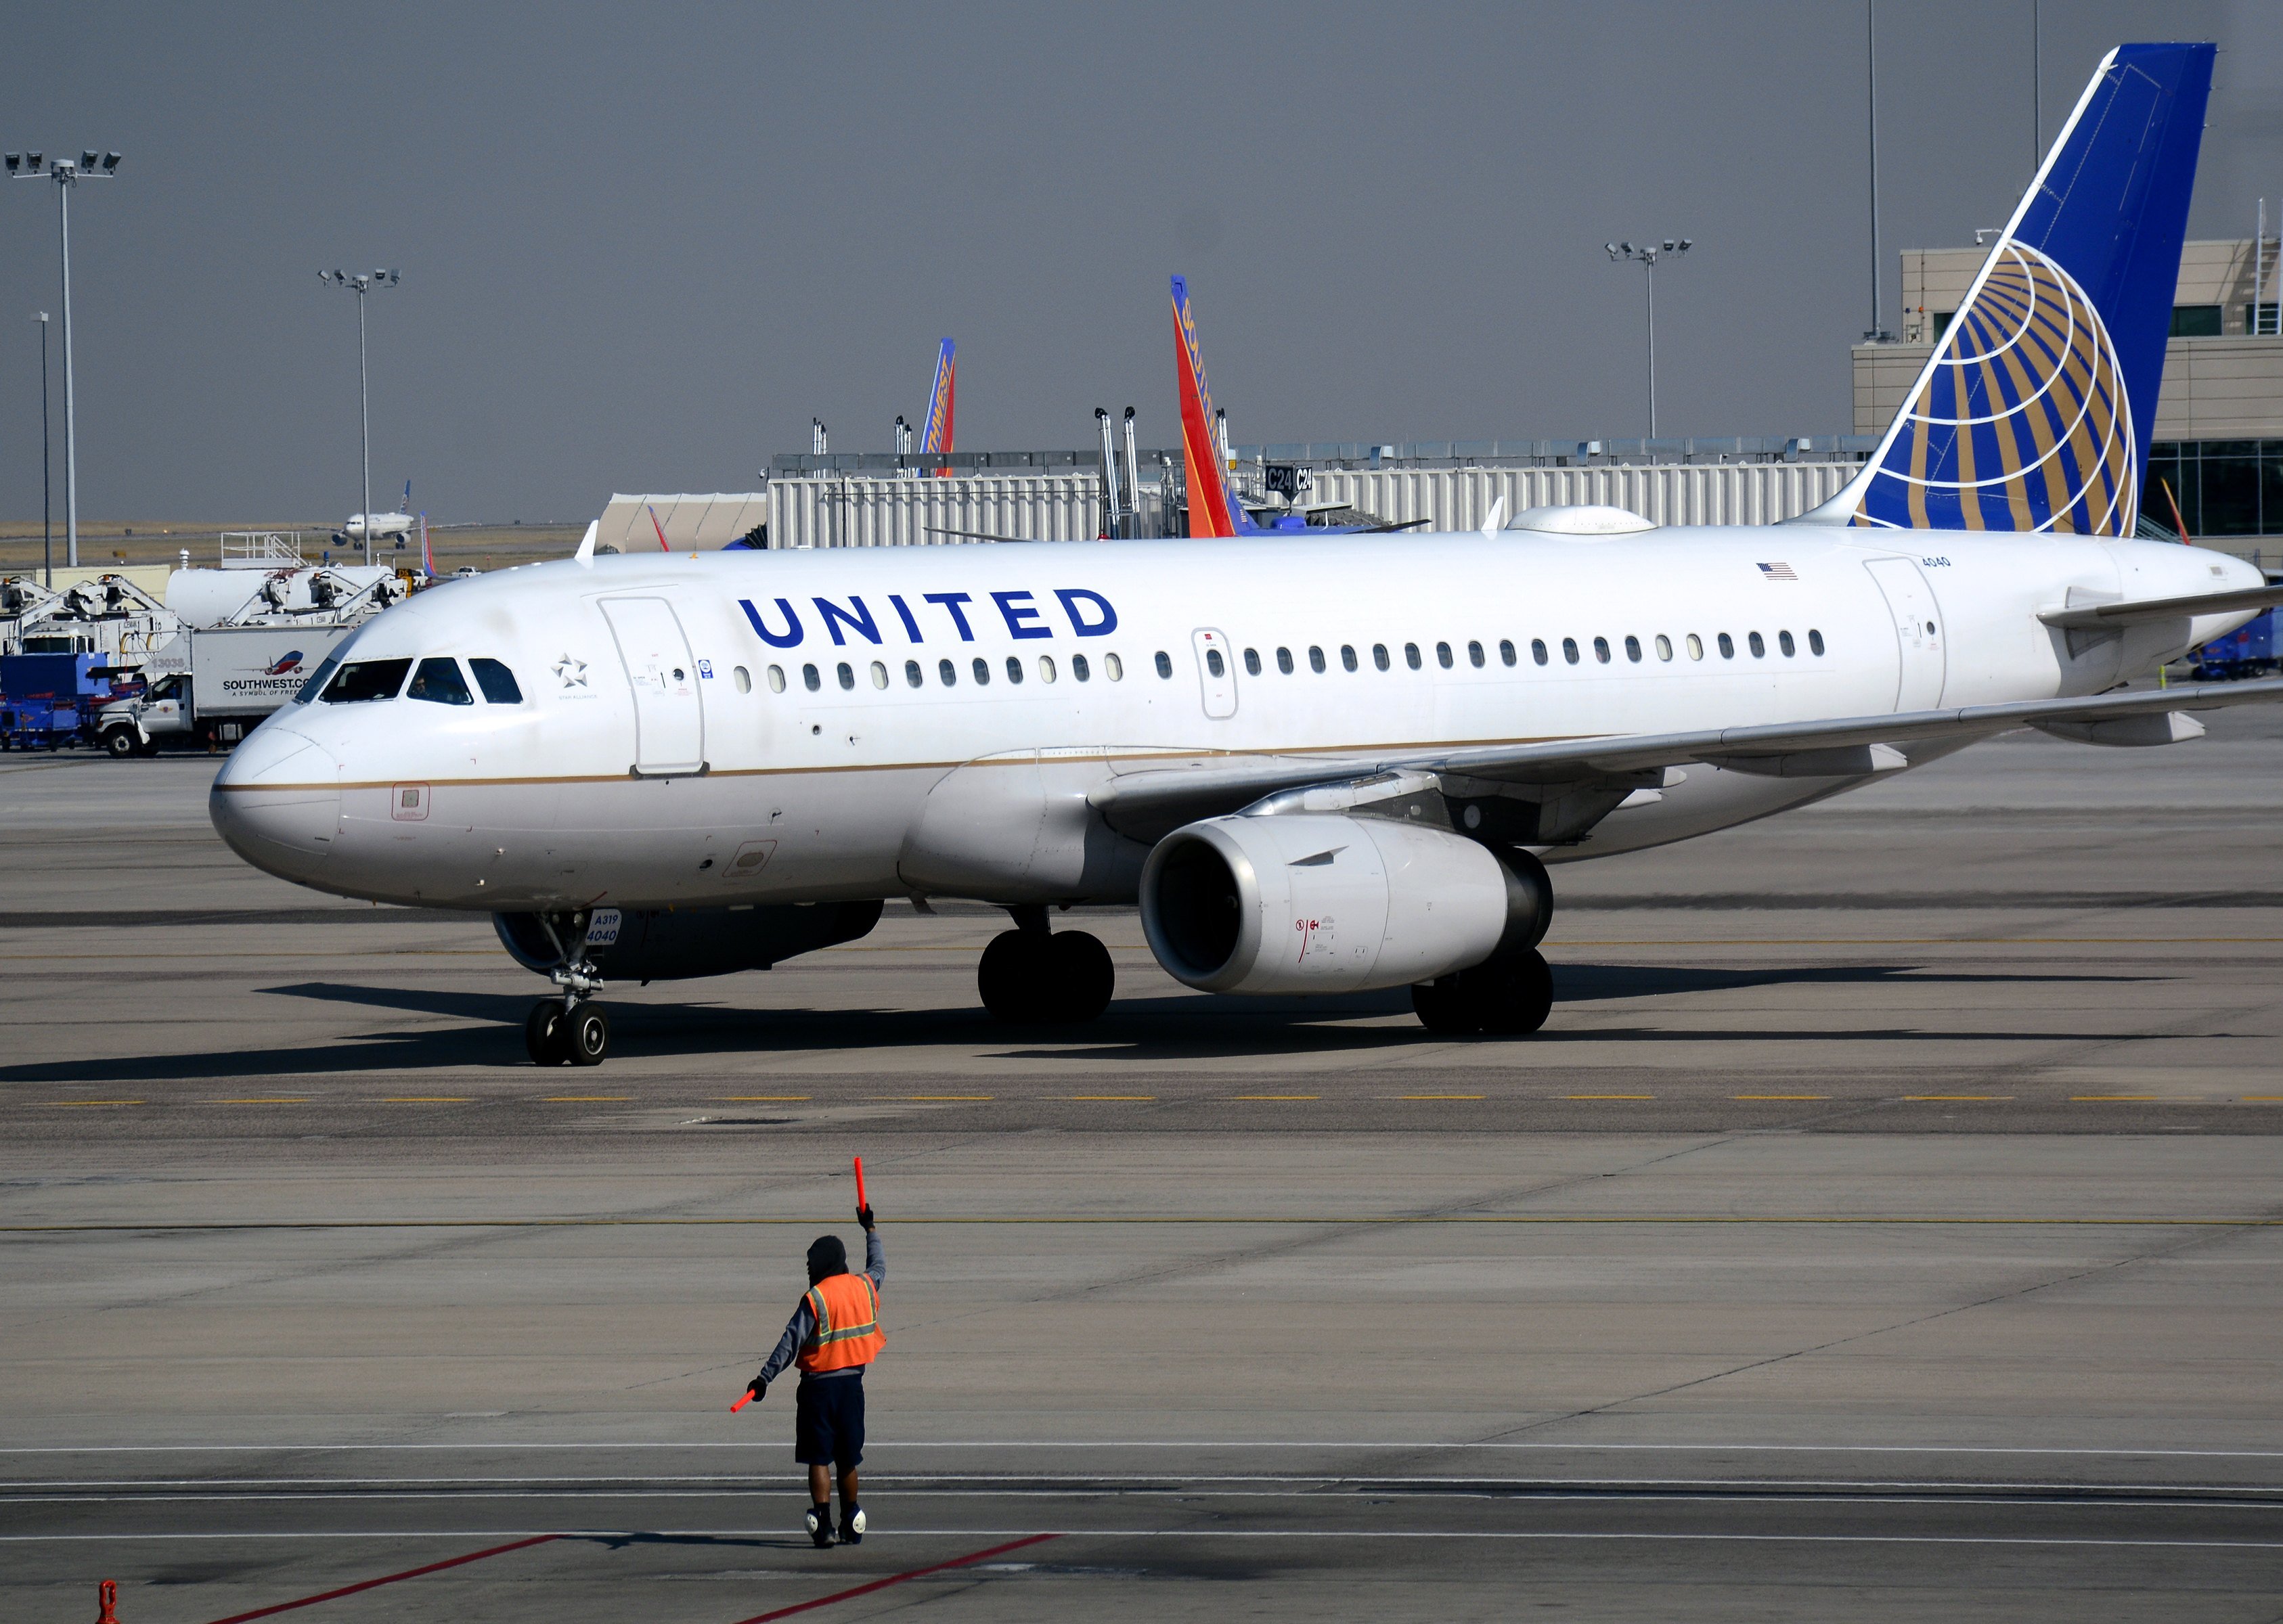 DENVER, CO - 25 de agosto de 2016: A United Airlines Airbus táxis avião A319 de passageiros Toward um portão no aeroporto internacional de Denver em Denver, Colorado. (Foto de Robert Alexander / Getty Images)